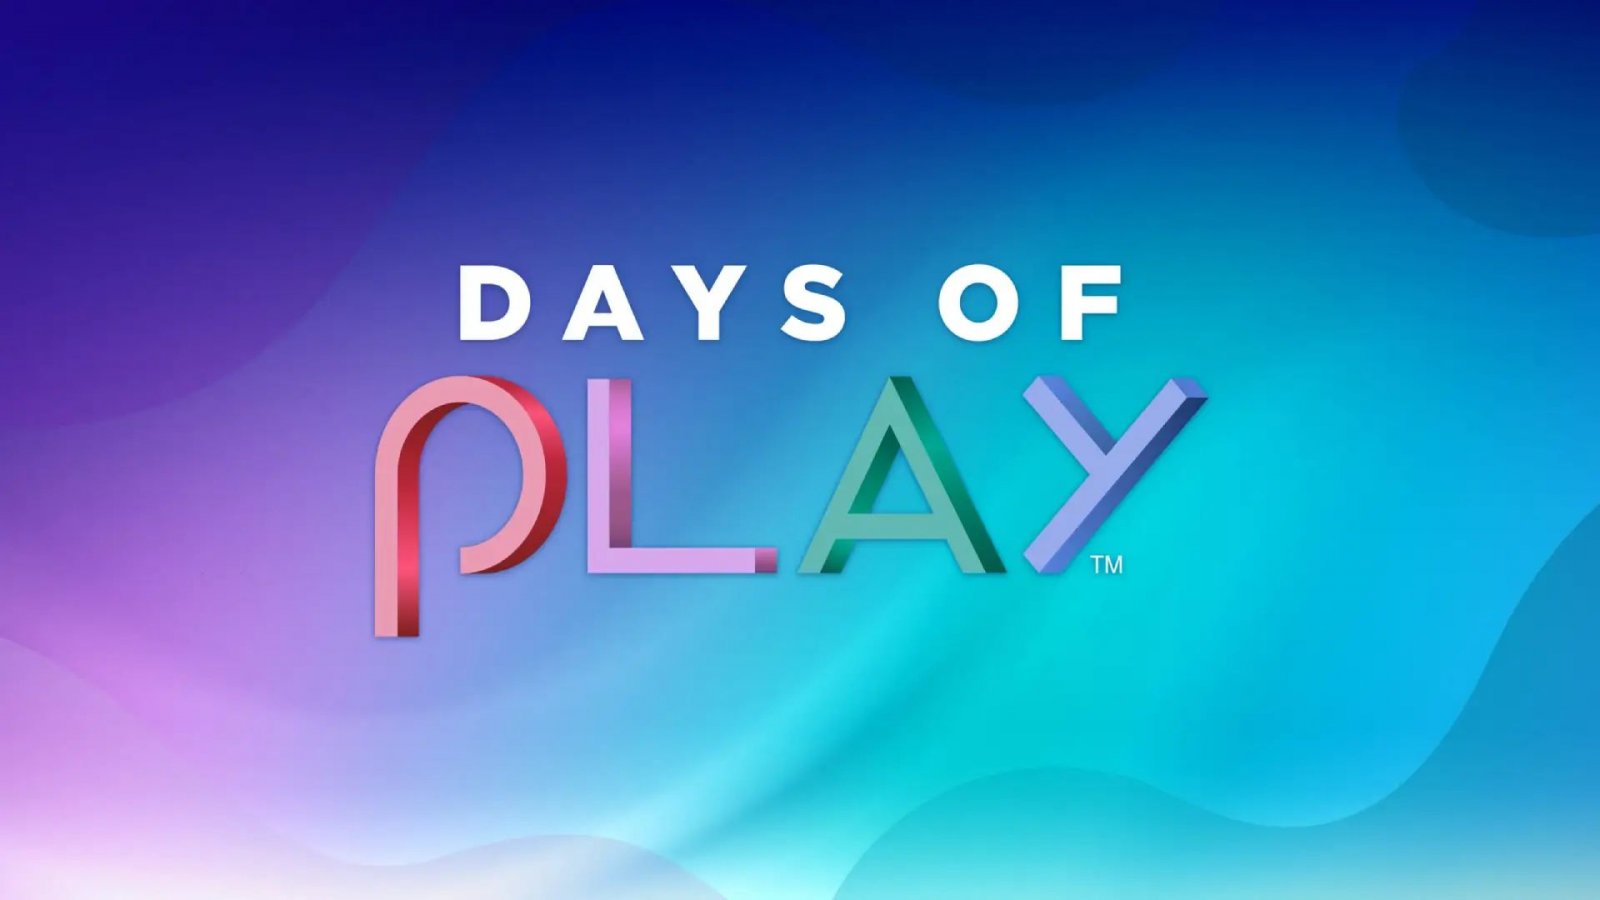 Il logo dell'iniziativa Days of Play